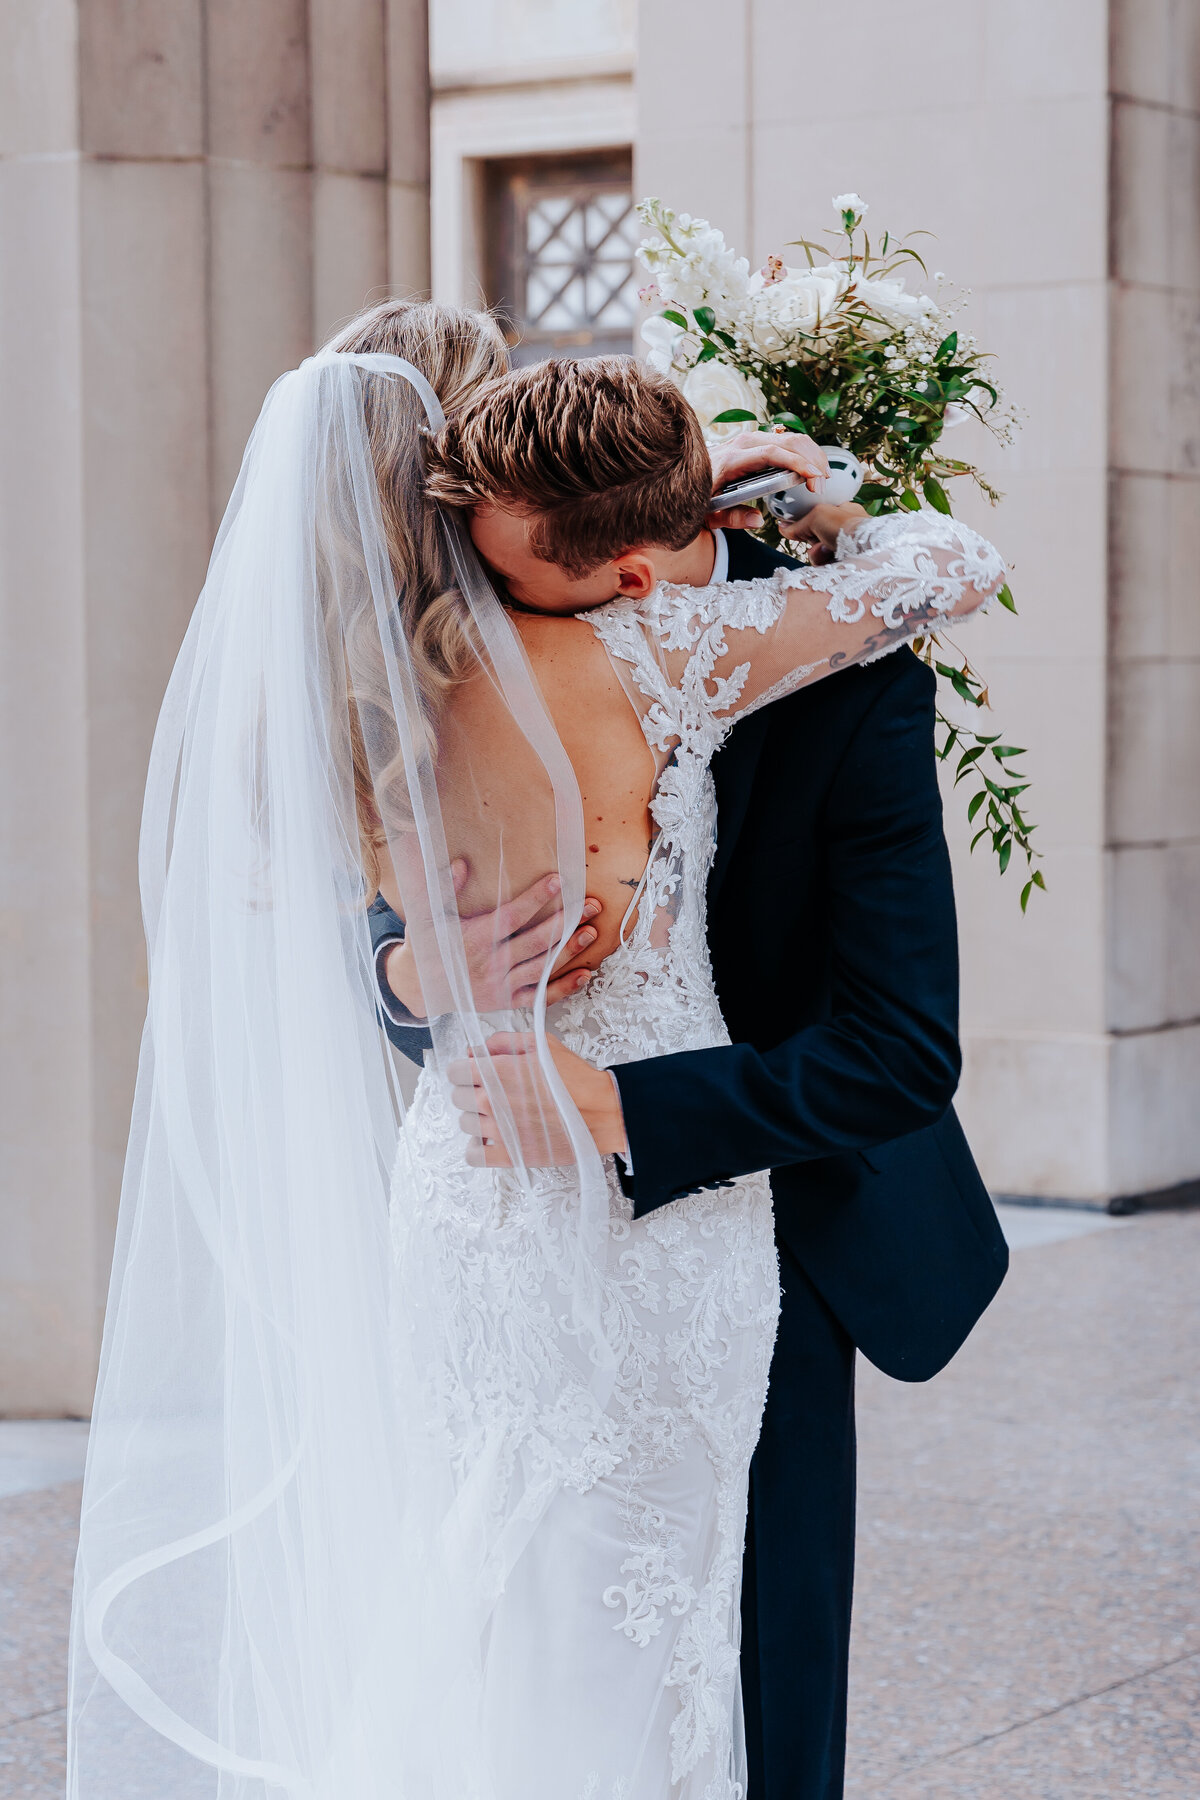 Nashville wedding photographer captures groom hugging bride after first look